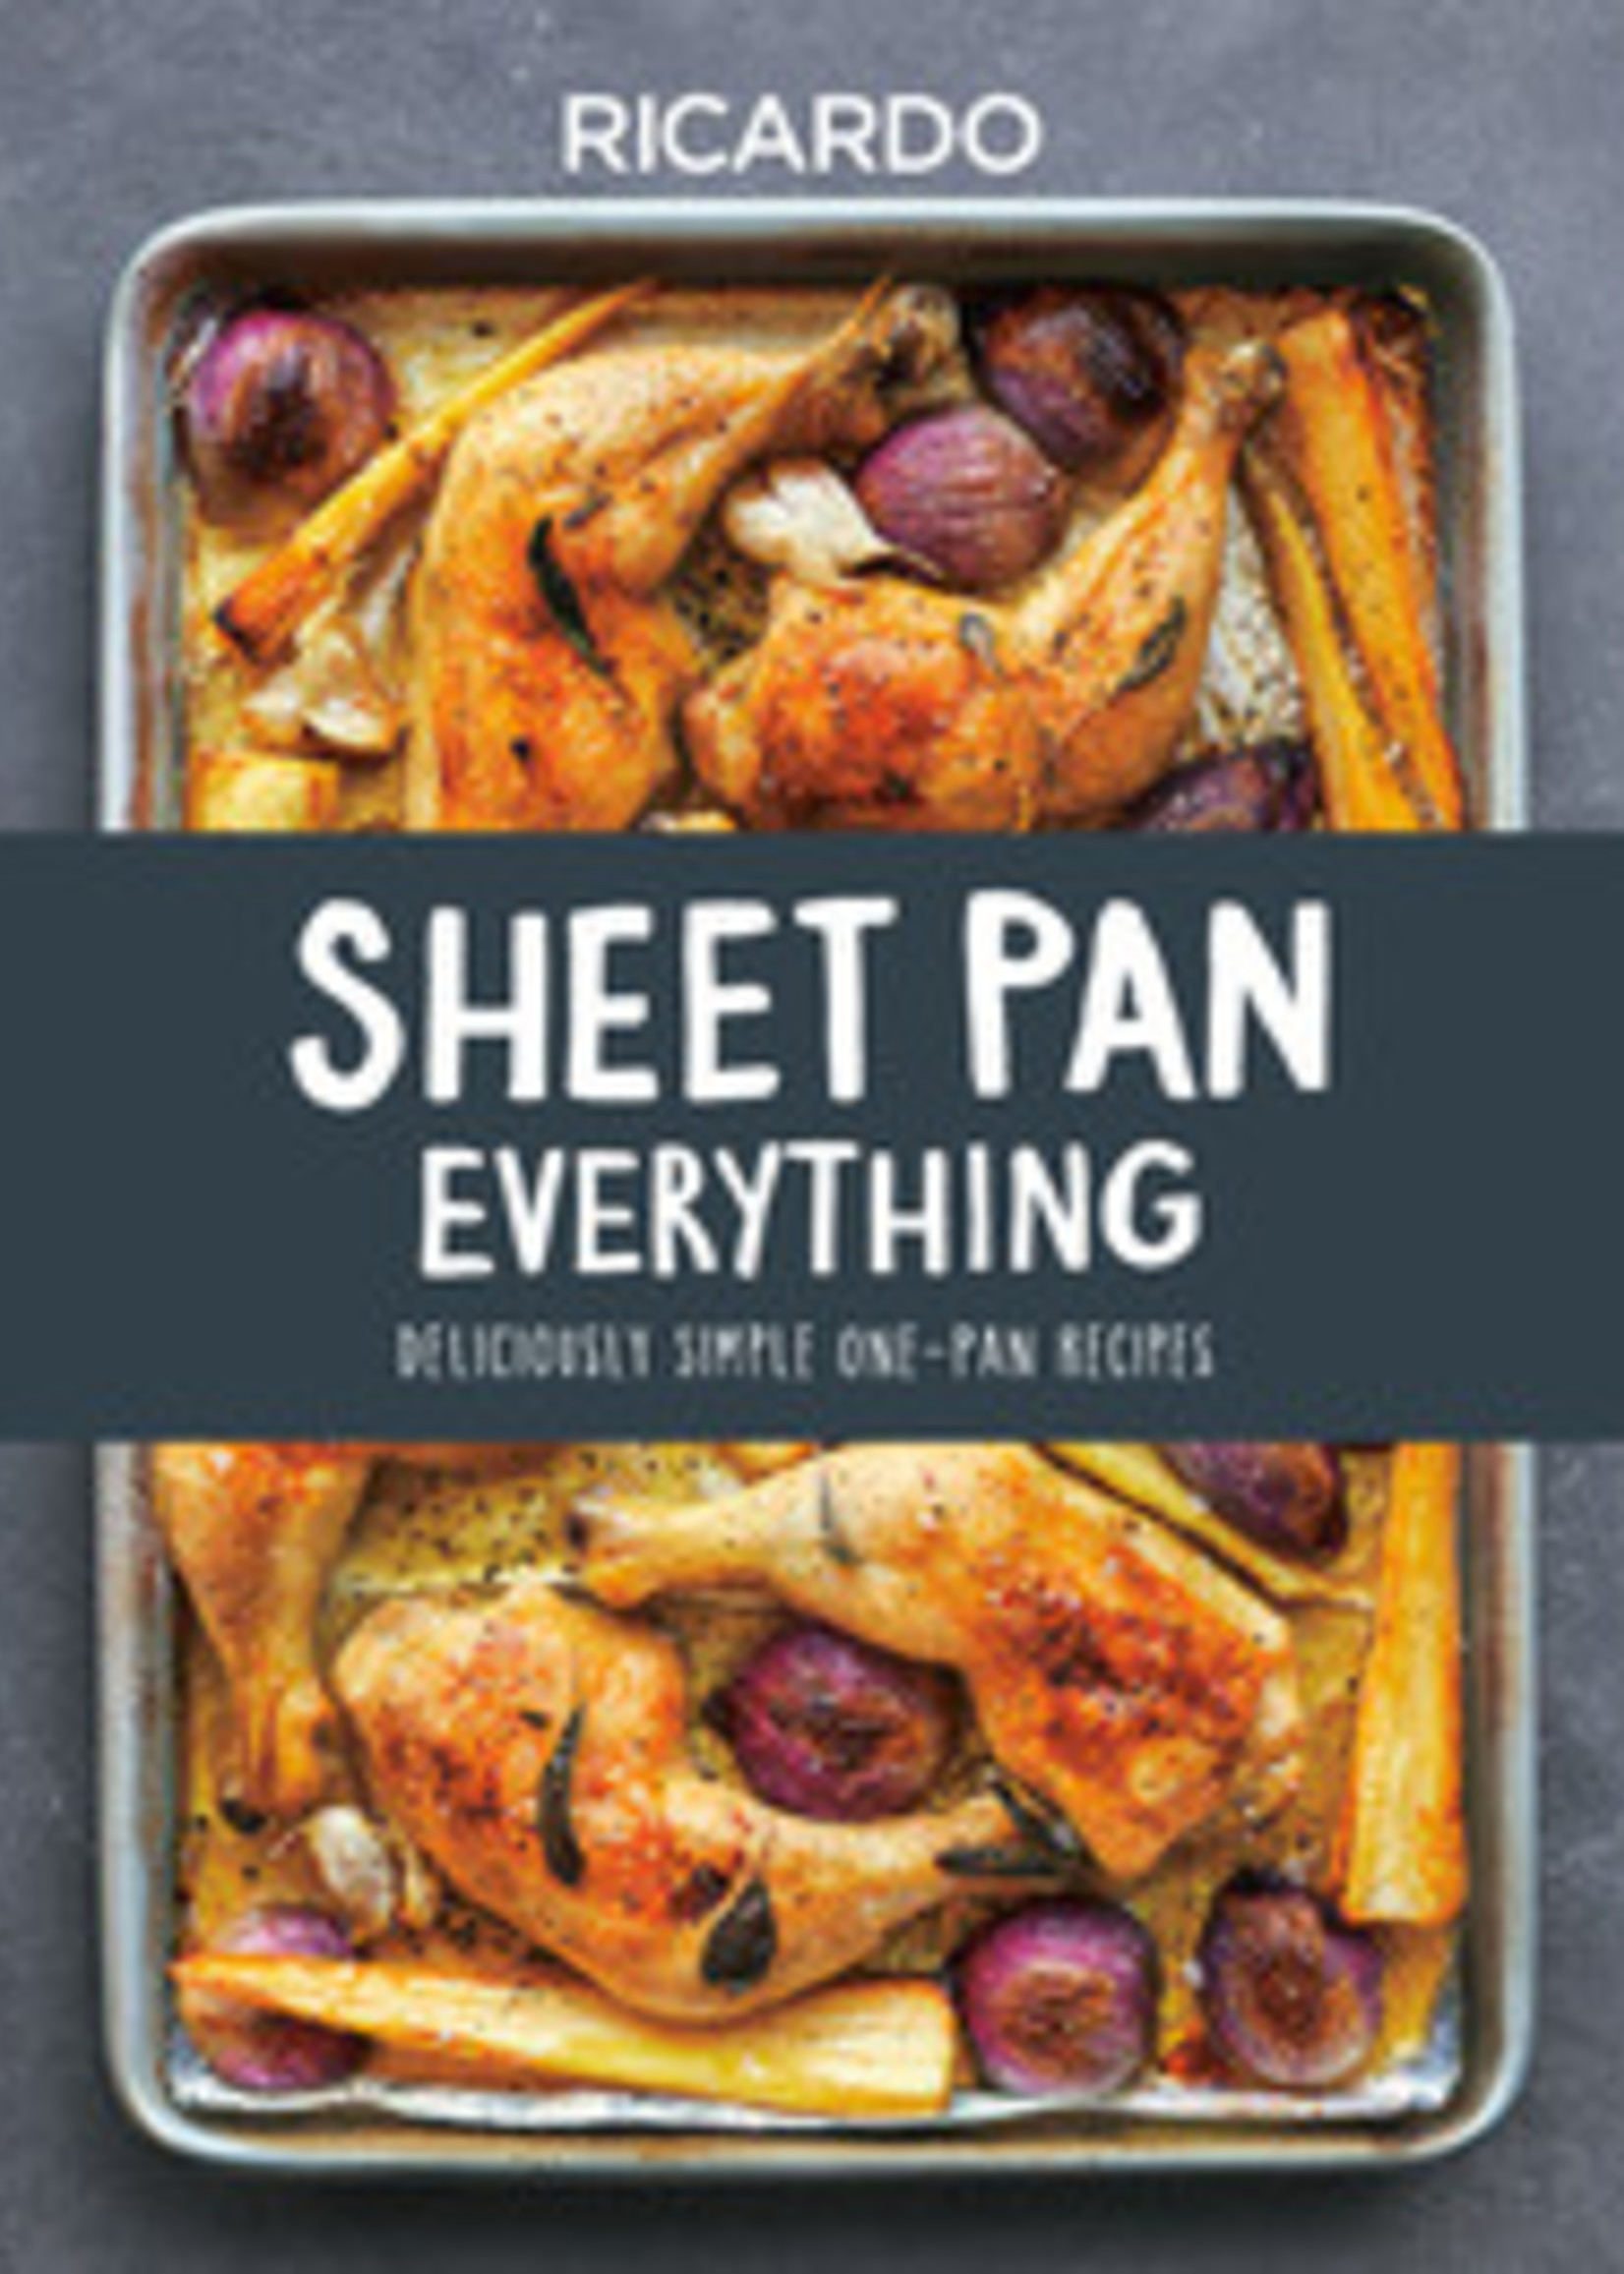 Sheet Pan Everything - Ricardo